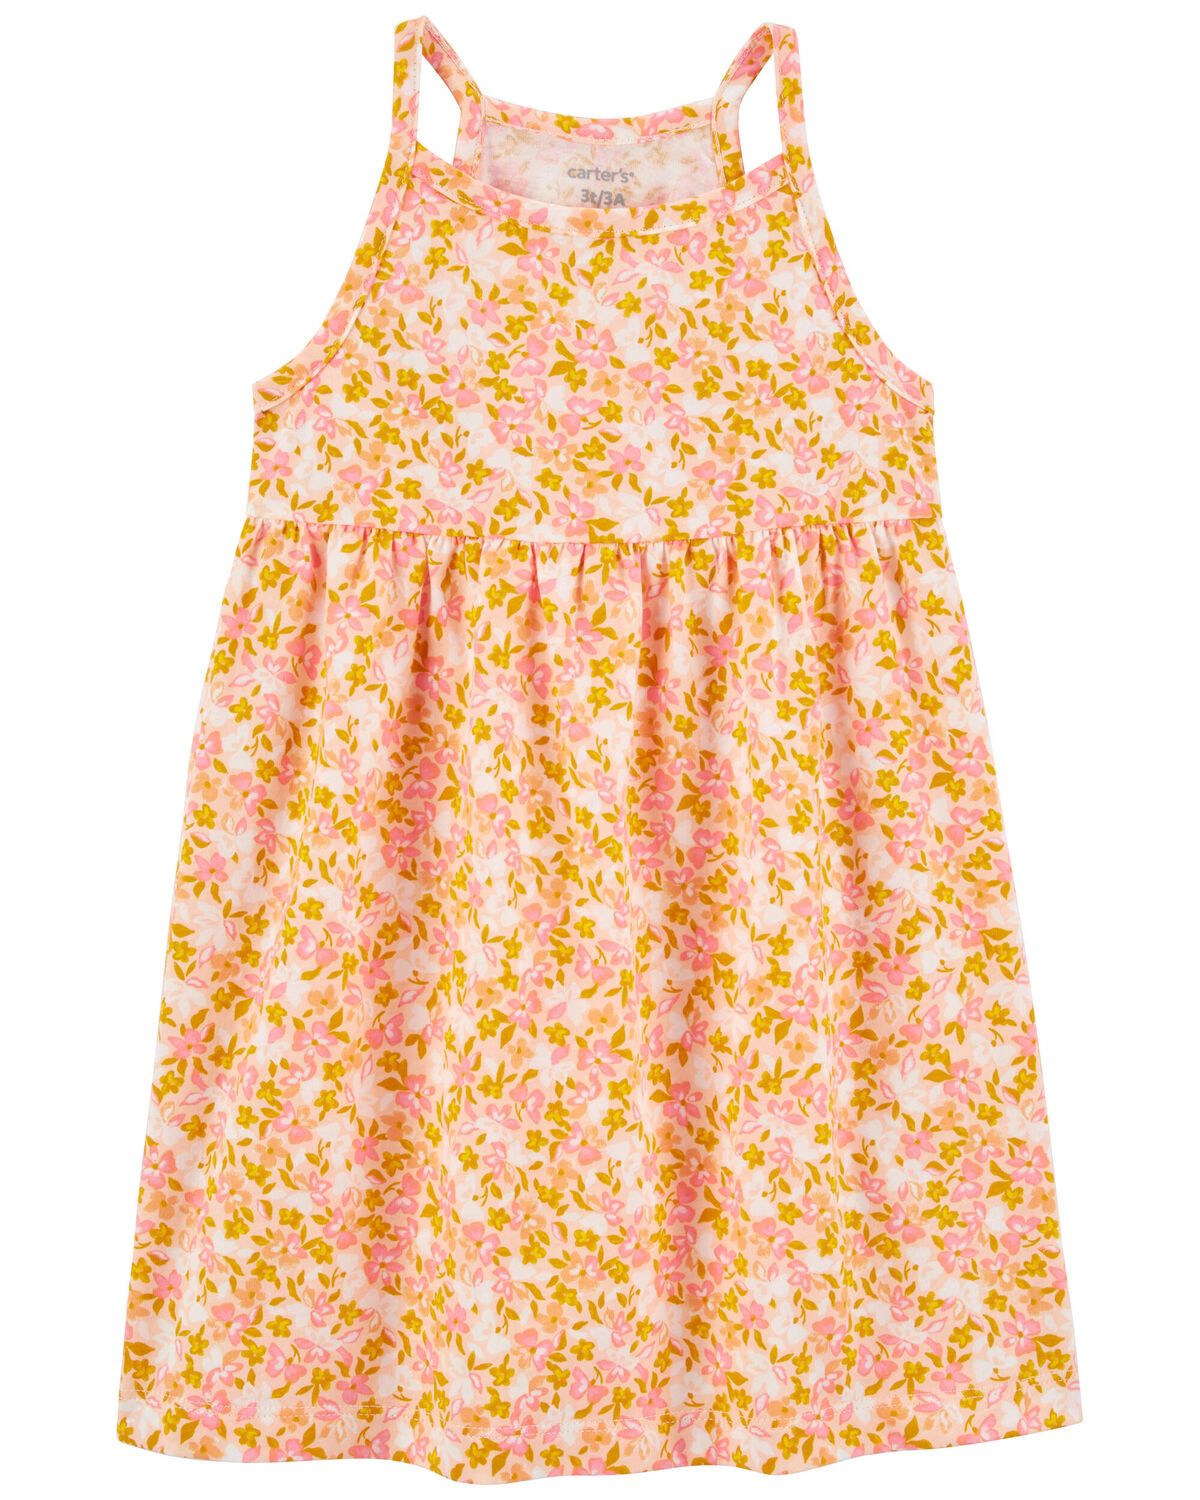 Toddler Floral Tank Dress | Carter's